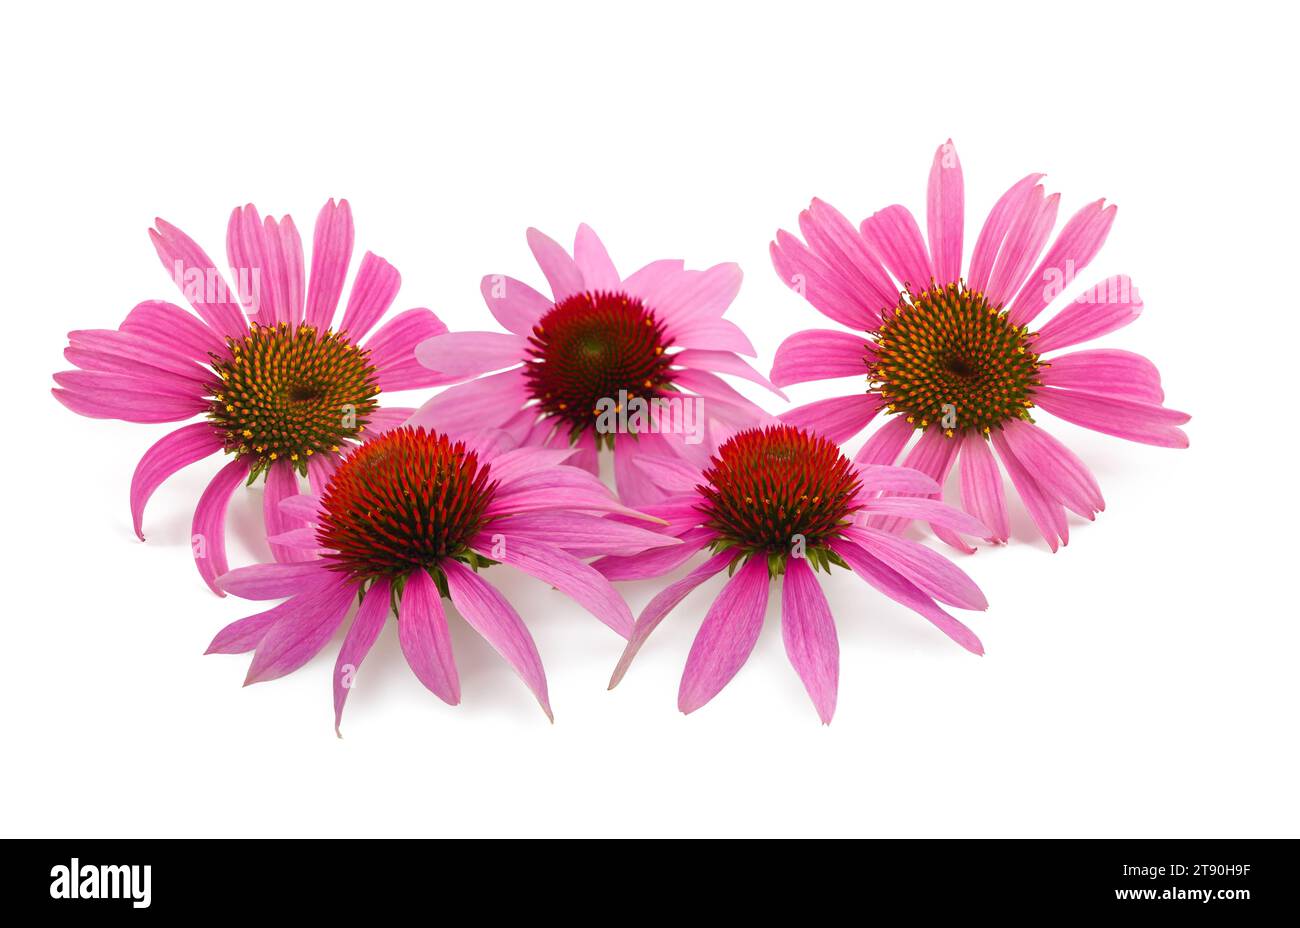 Echinacea flowers group isolated on white background Stock Photo